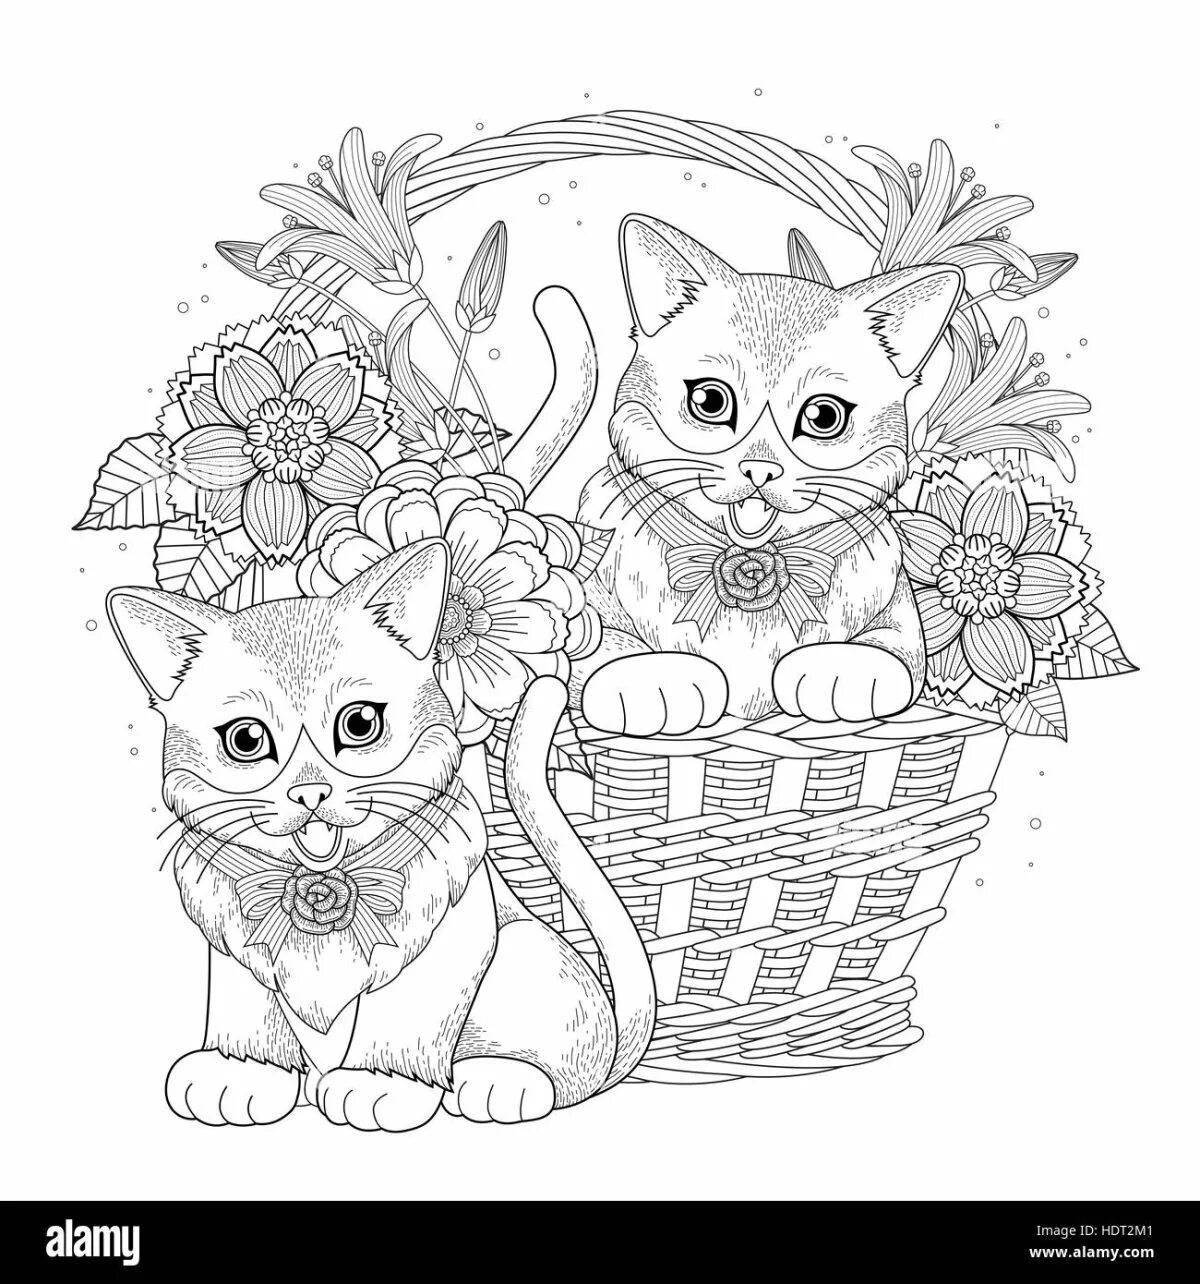 Раскраска счастливый котенок с цветами